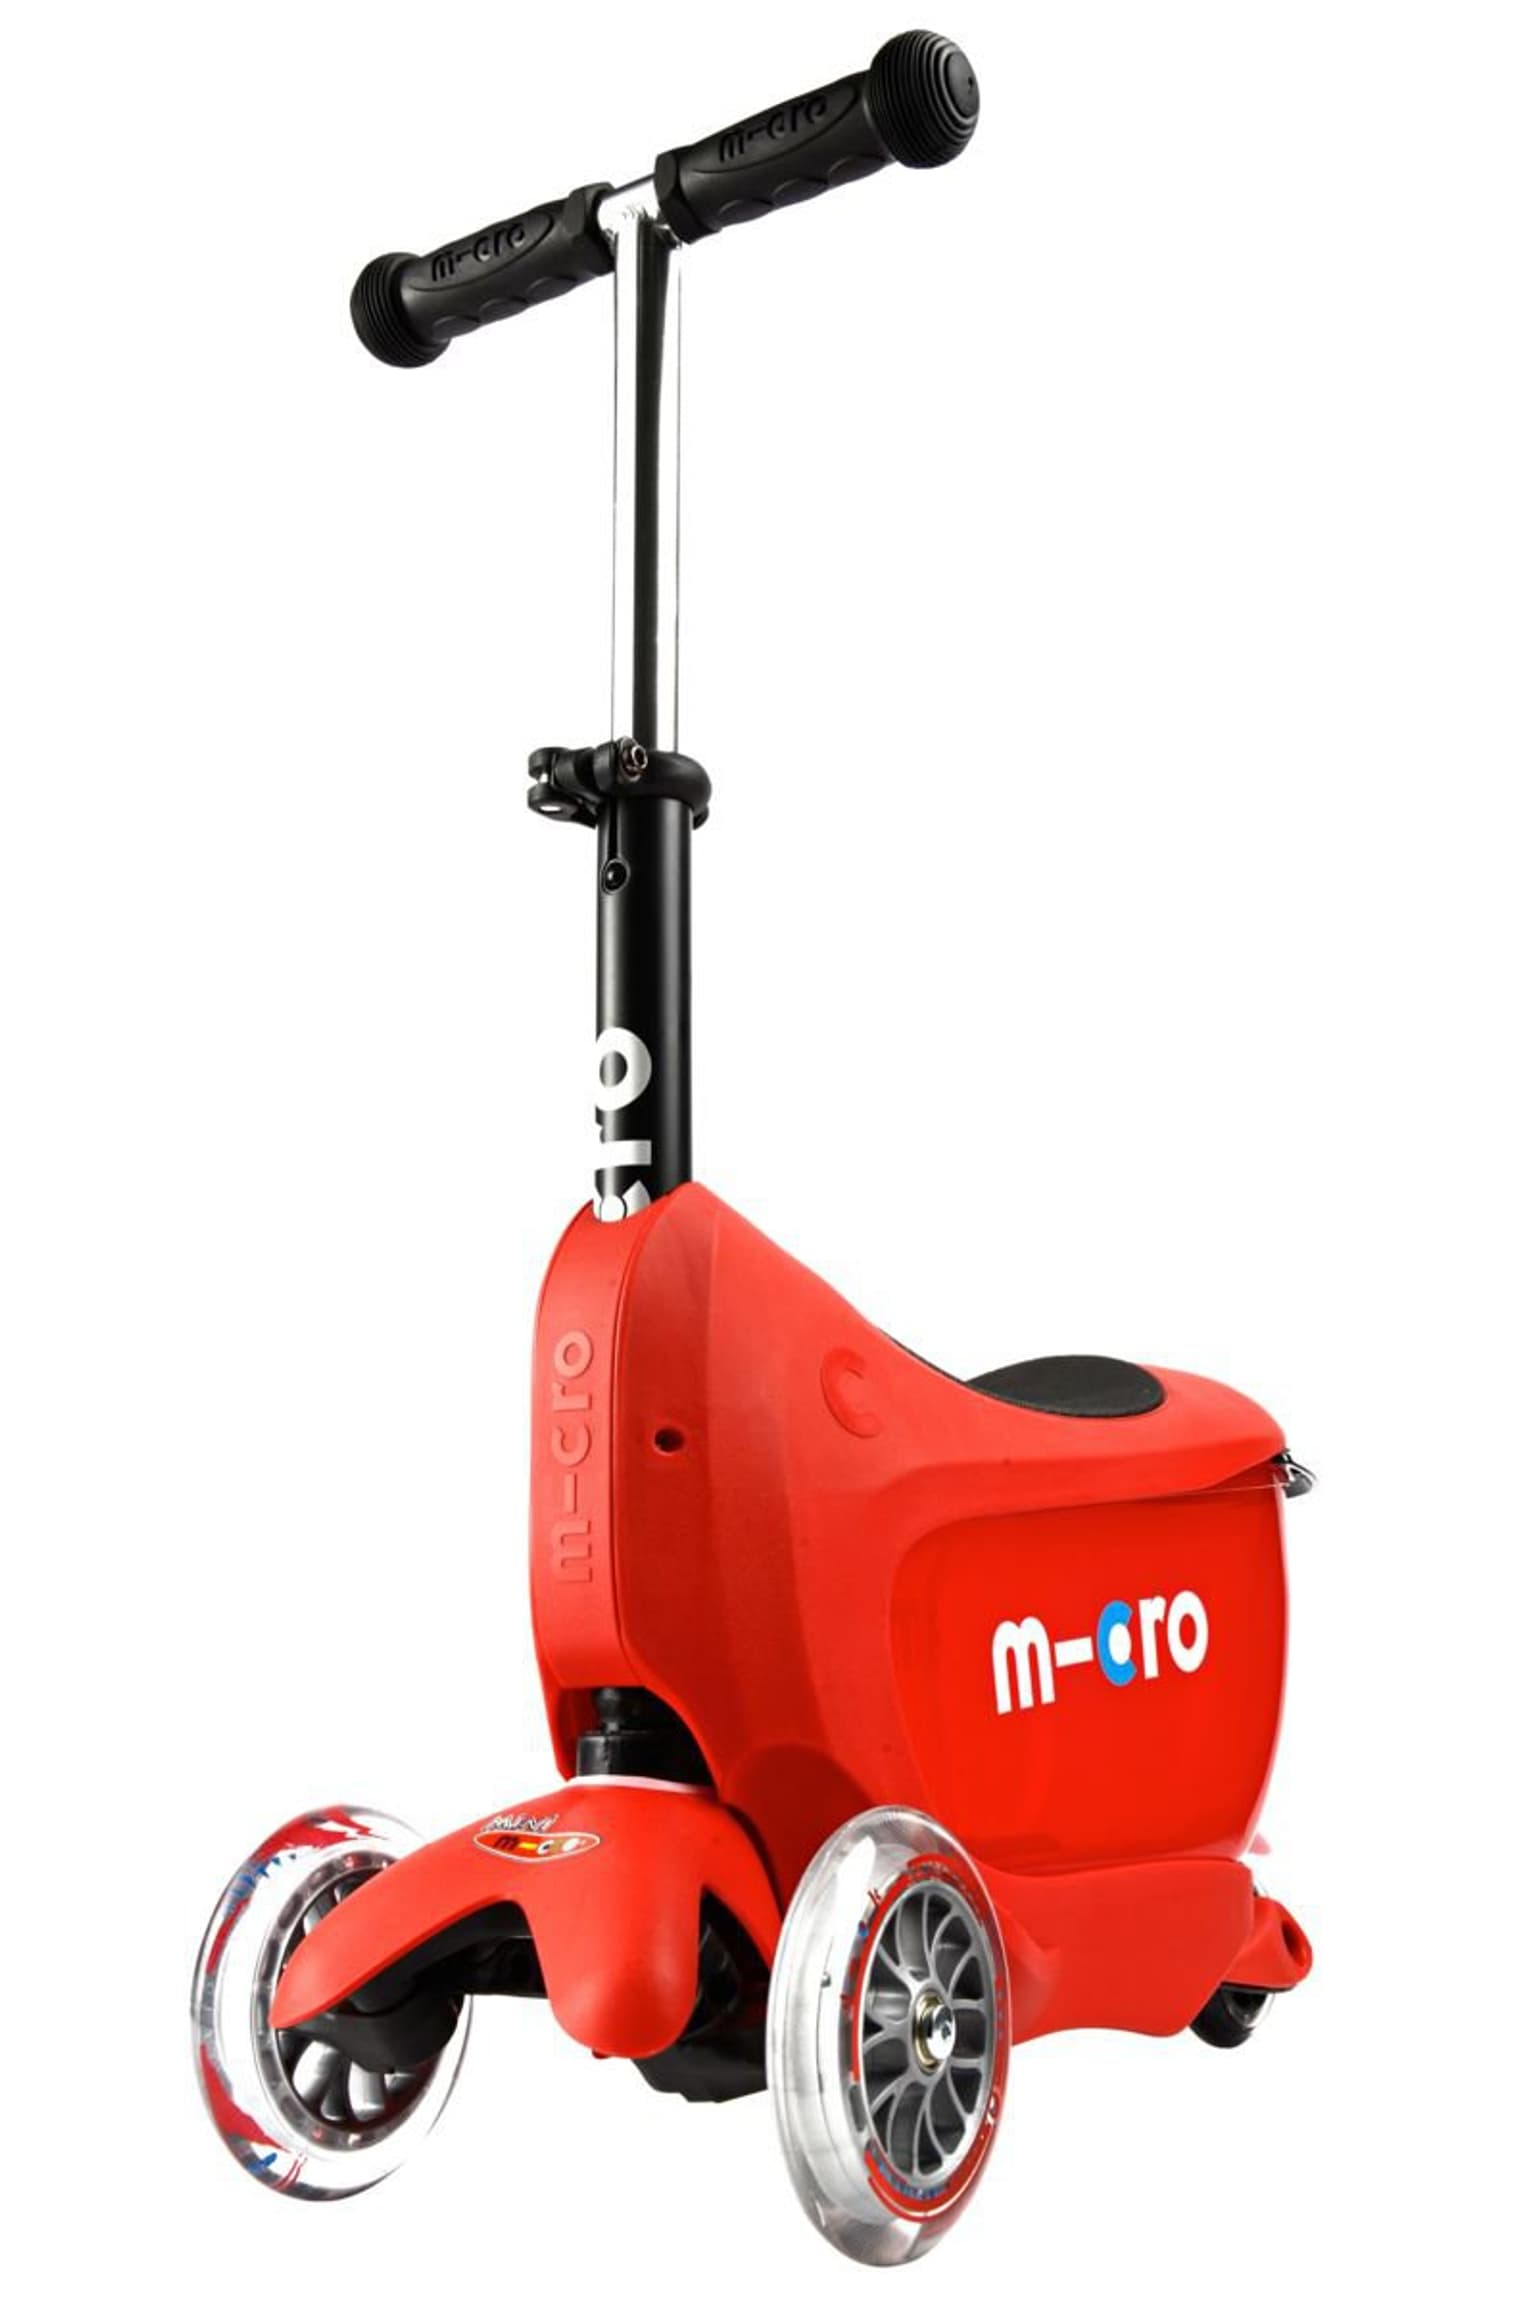 Micro Micro Mini2go Deluxe Plus Scooter 1